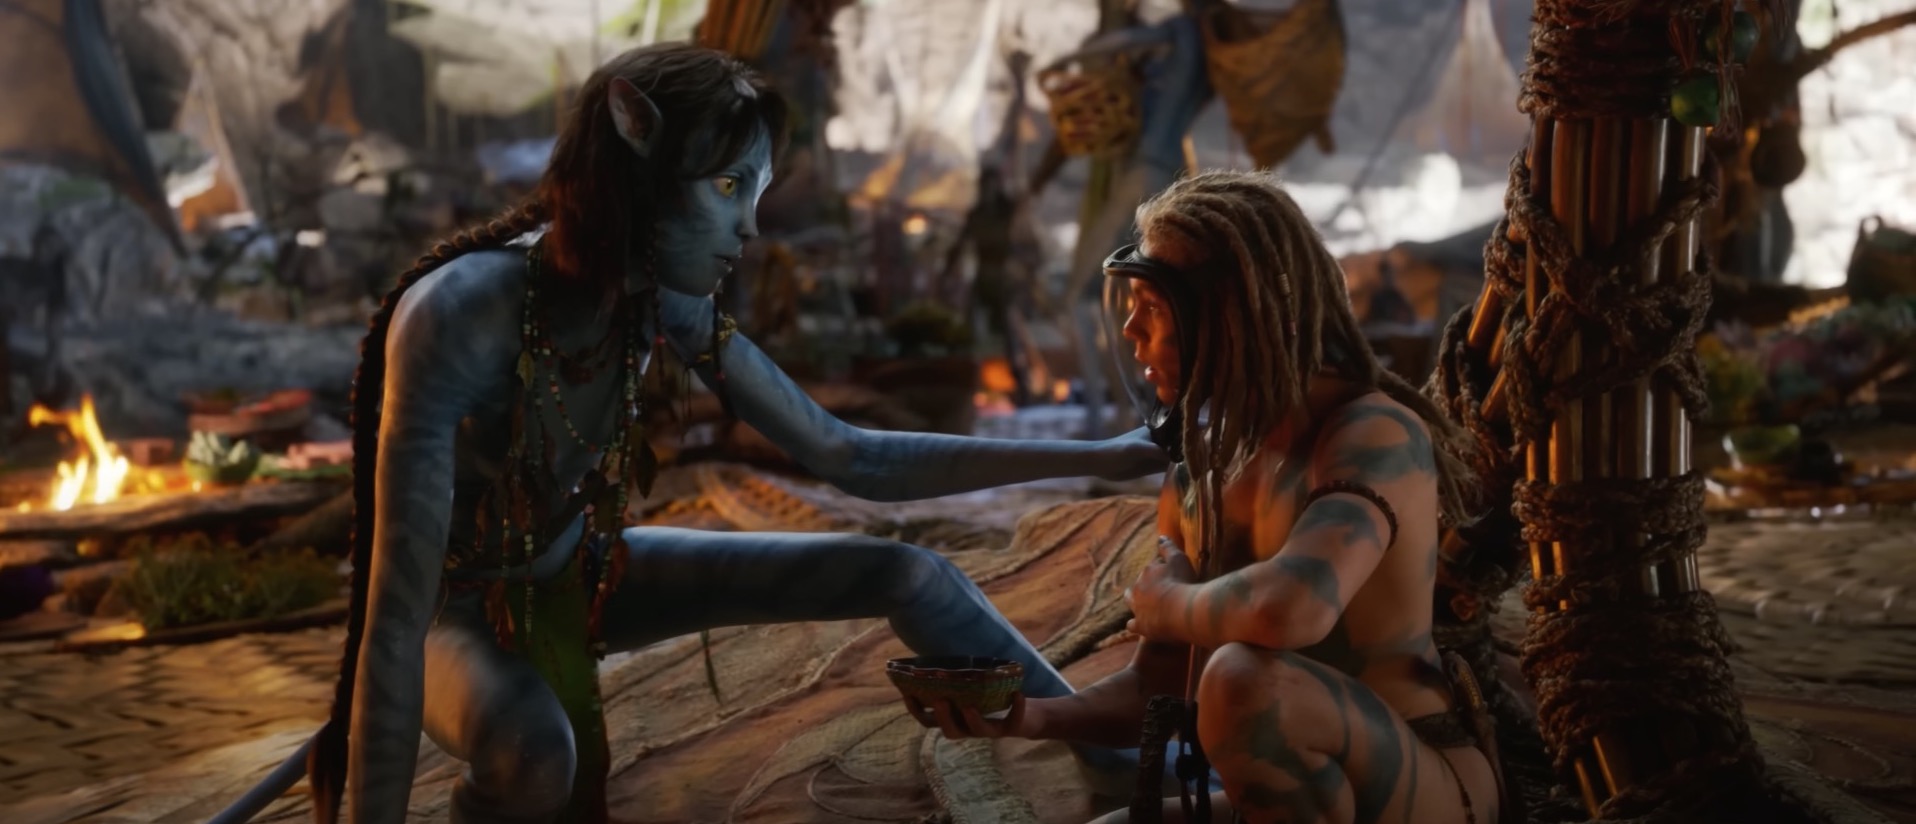 Avatar La Voie de l'eau : cet acteur s'attendait aux violentes critiques sur son personnage